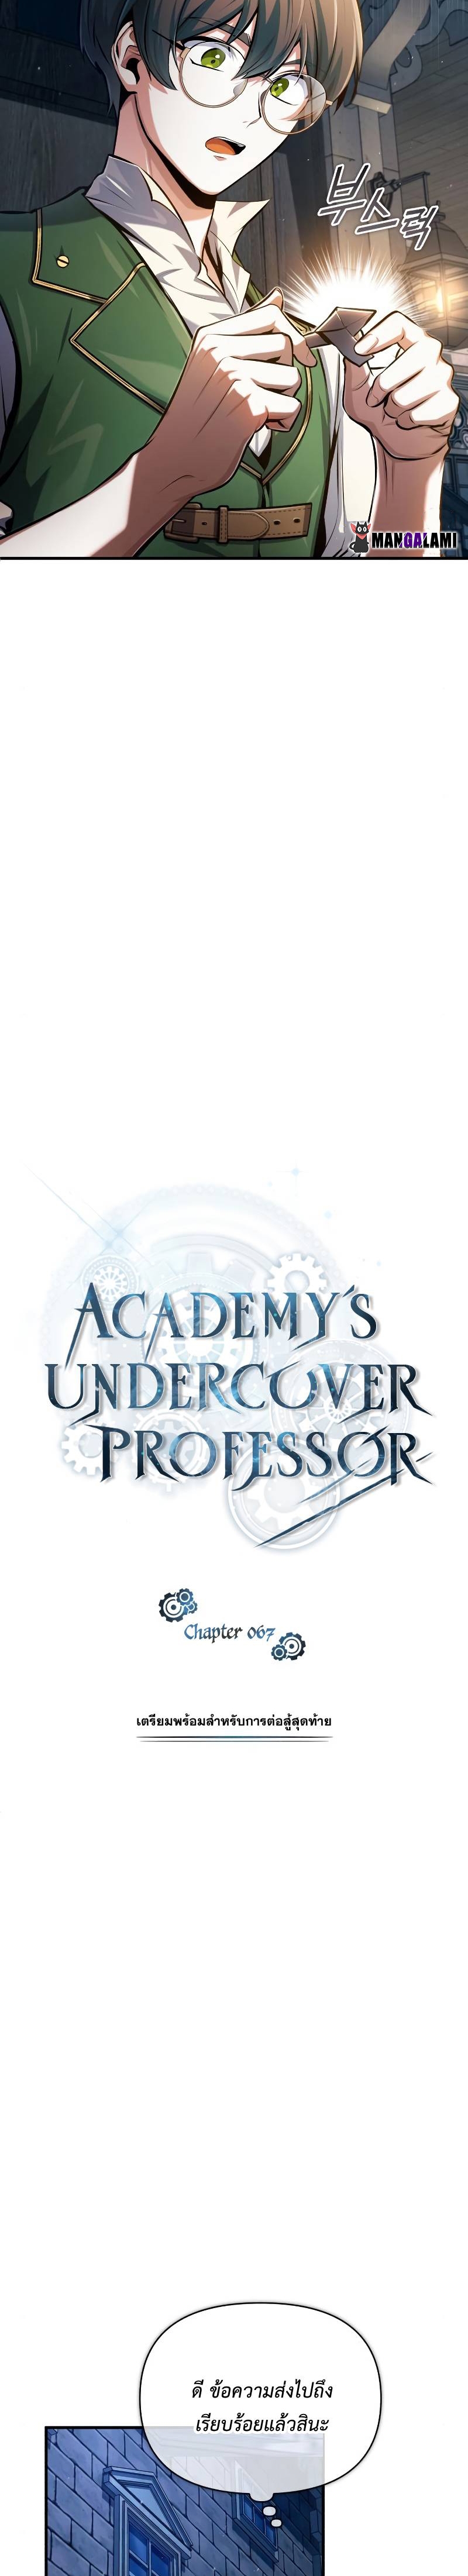 Academy’s Undercover Professorx 67 (17)